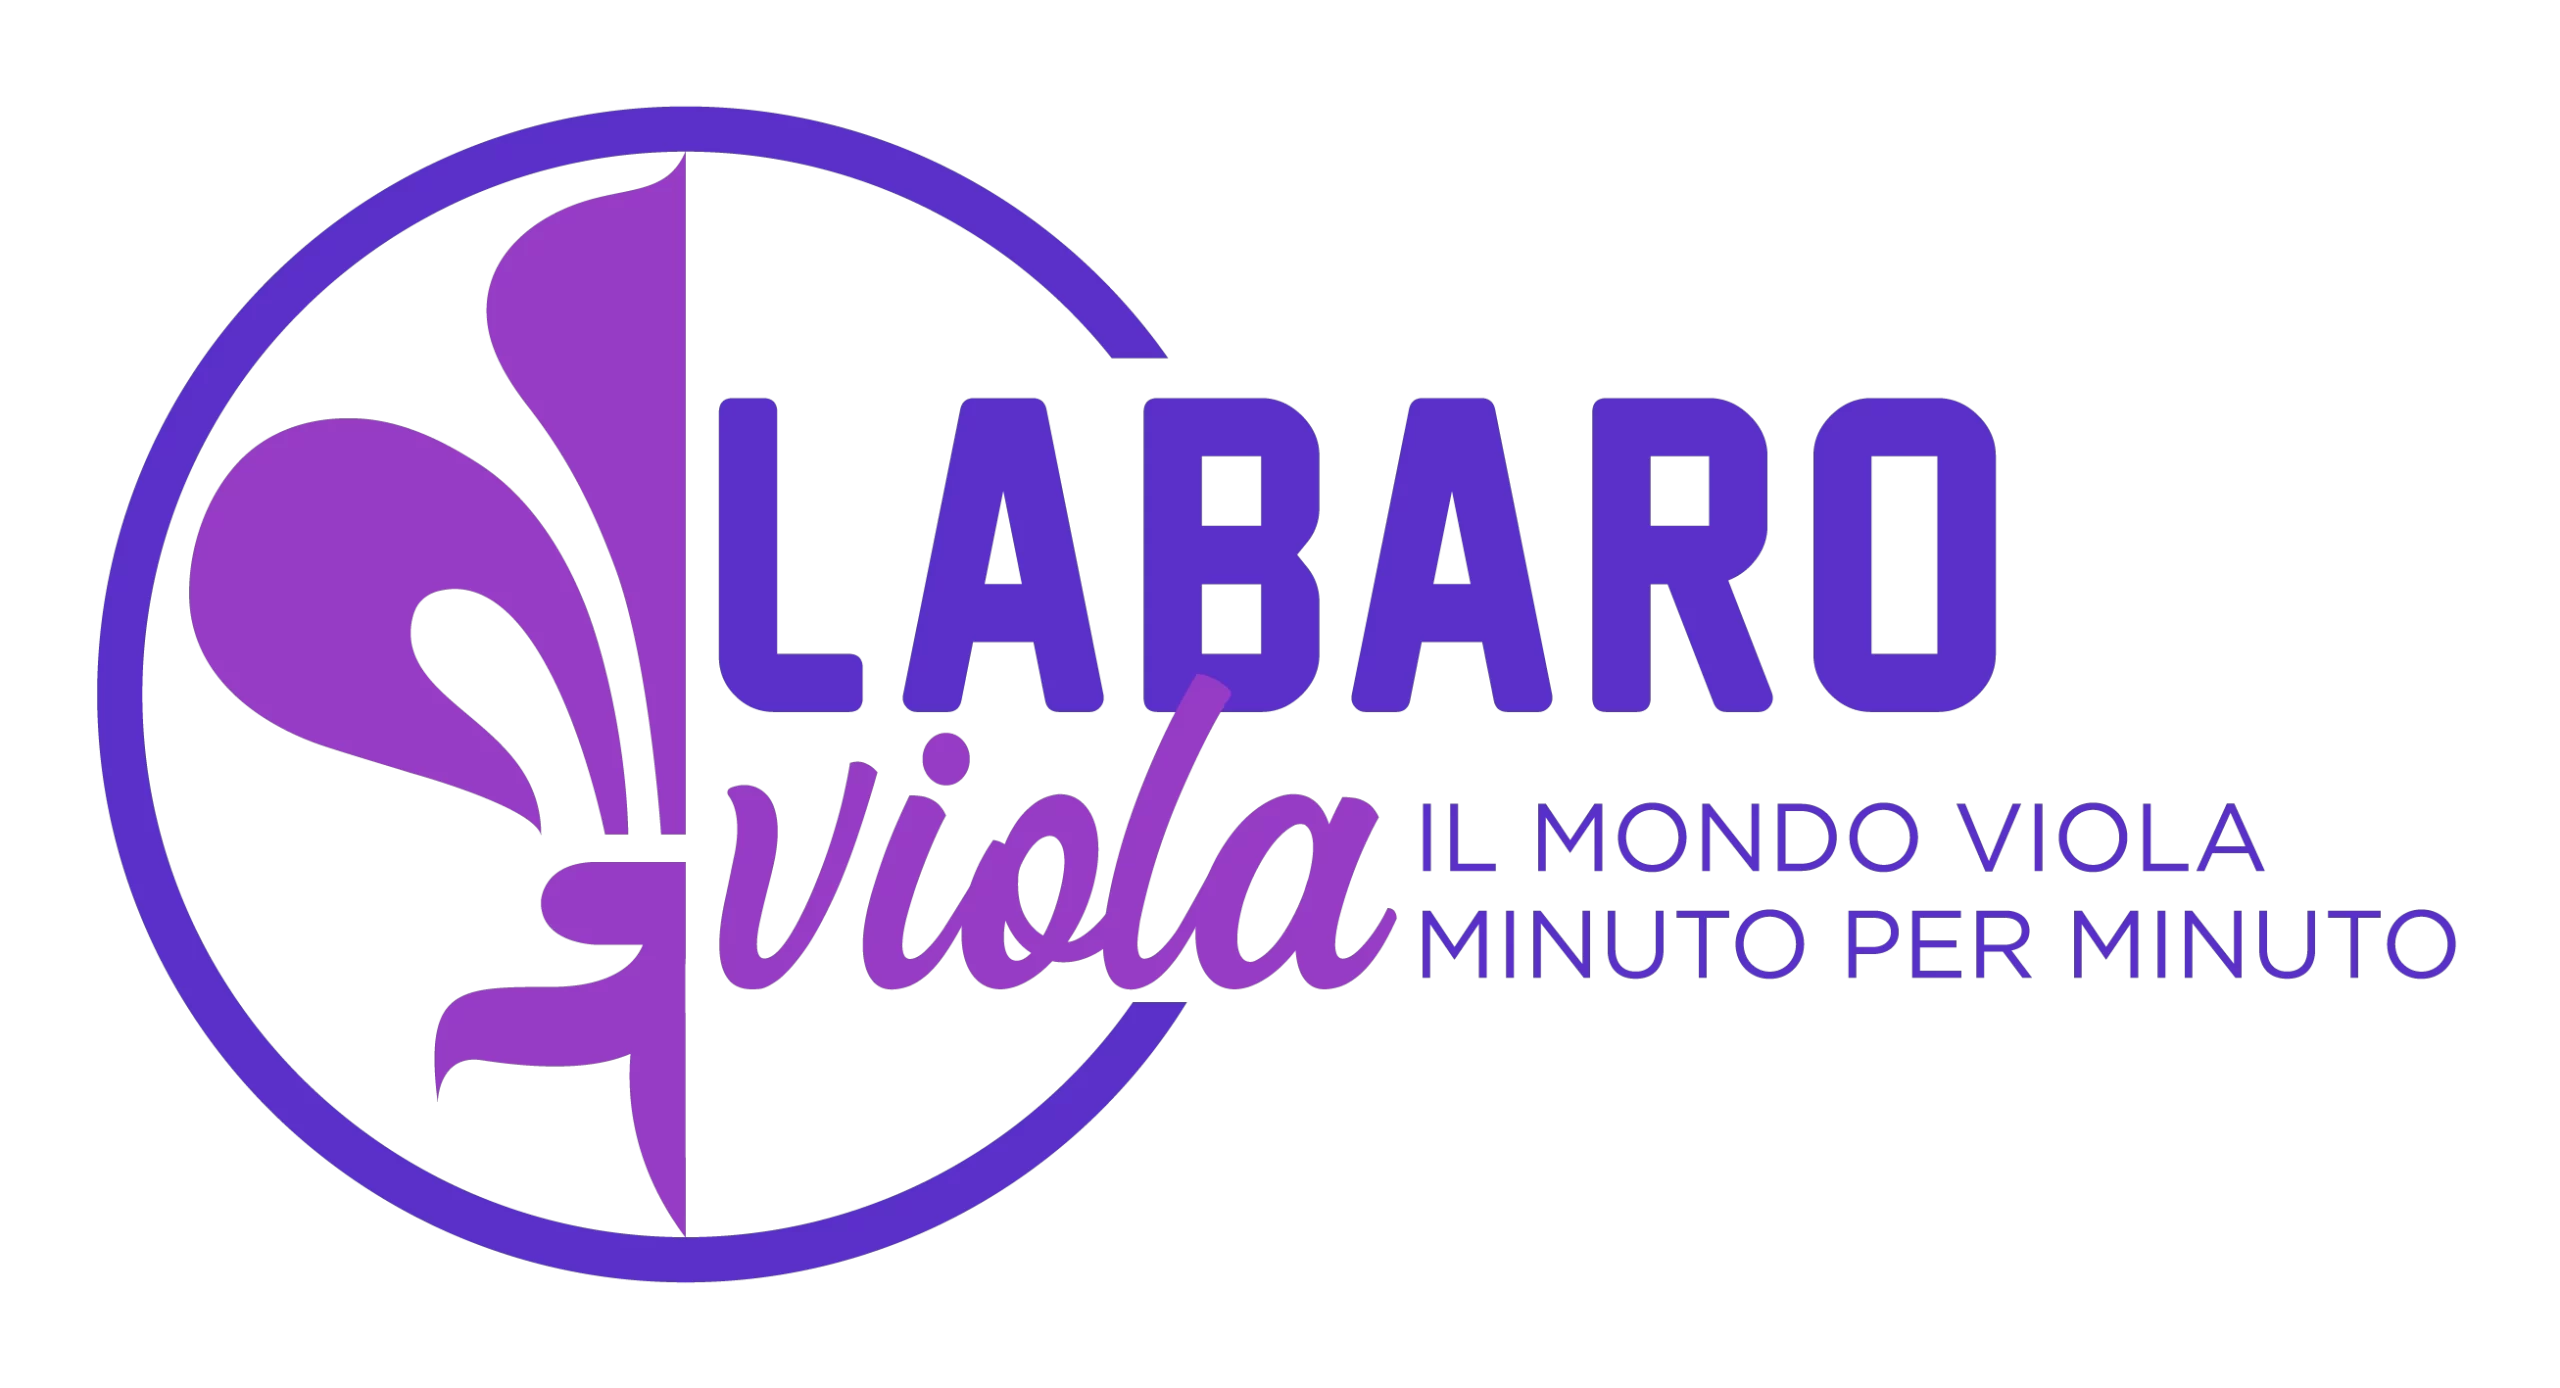 Labaro viola: il mondo viola minuto per minuto